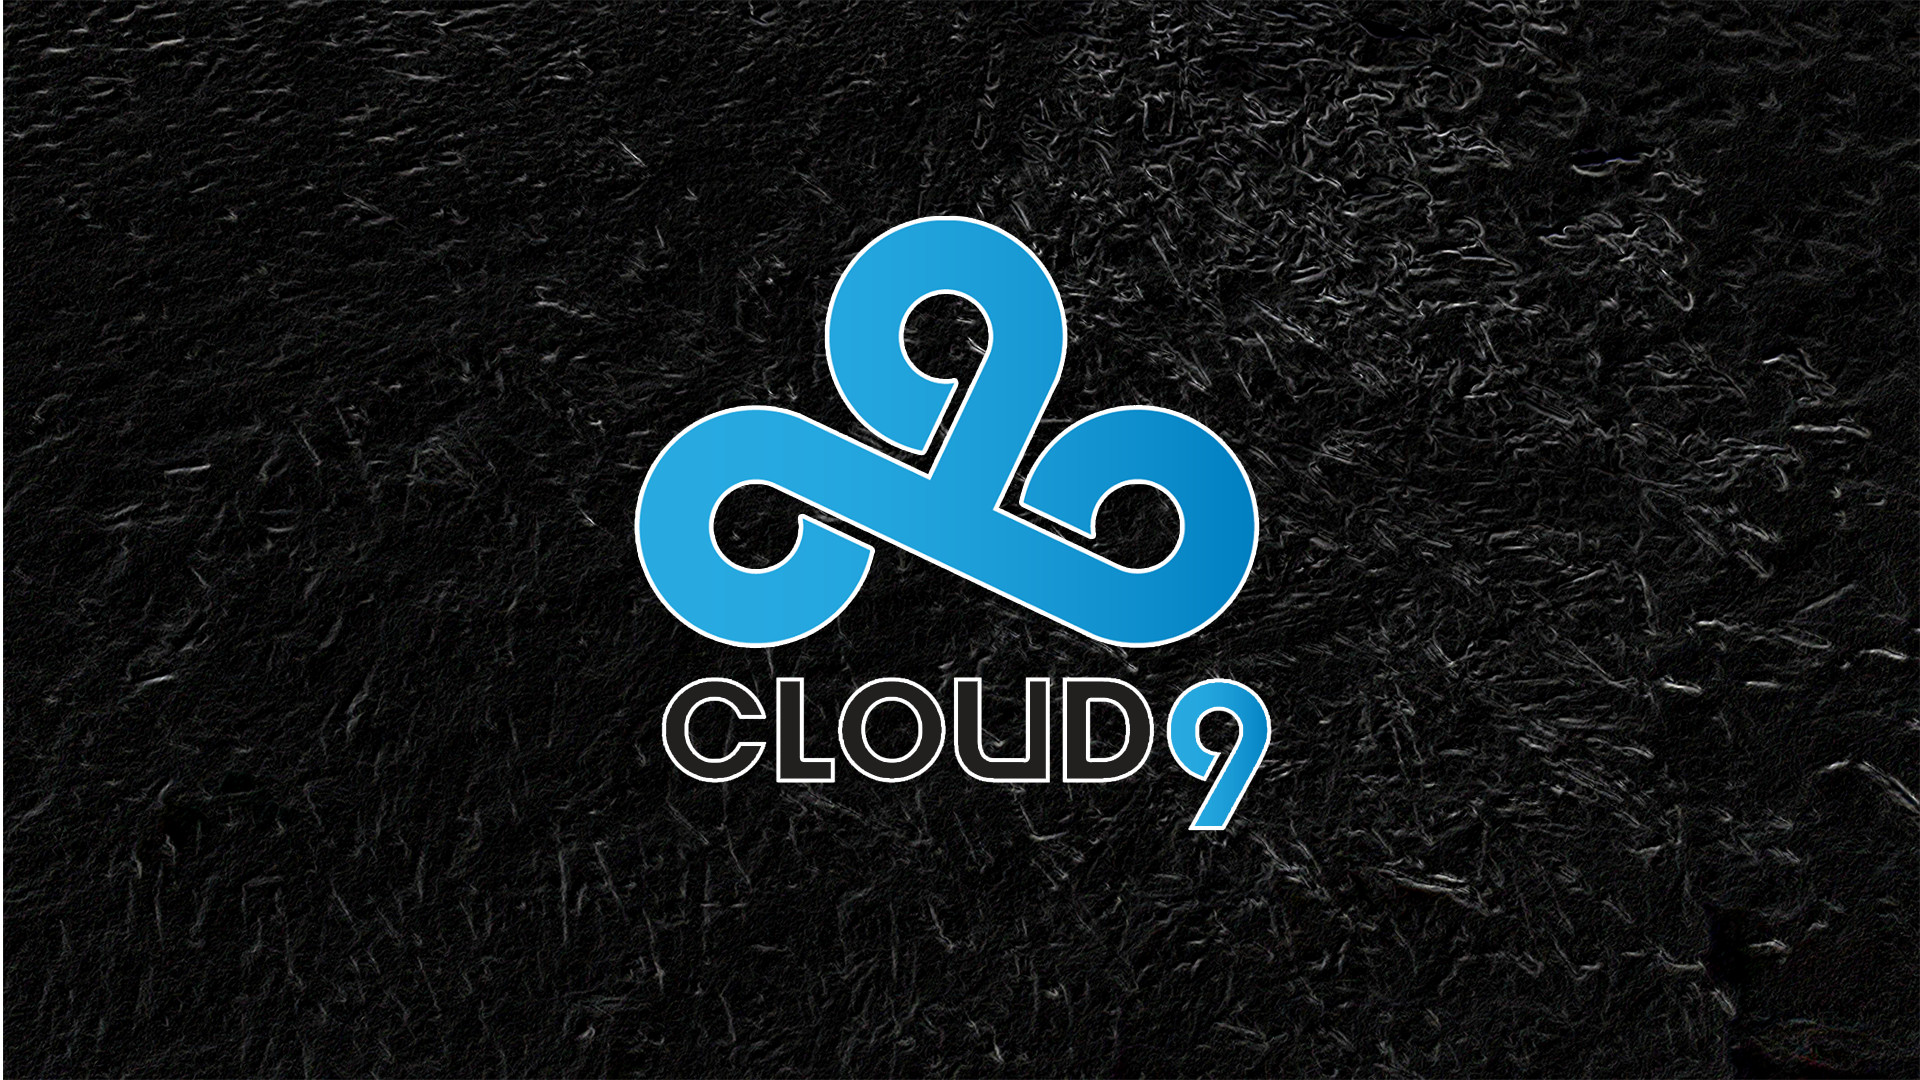 Cloud Csgo HD Wallpaper Image